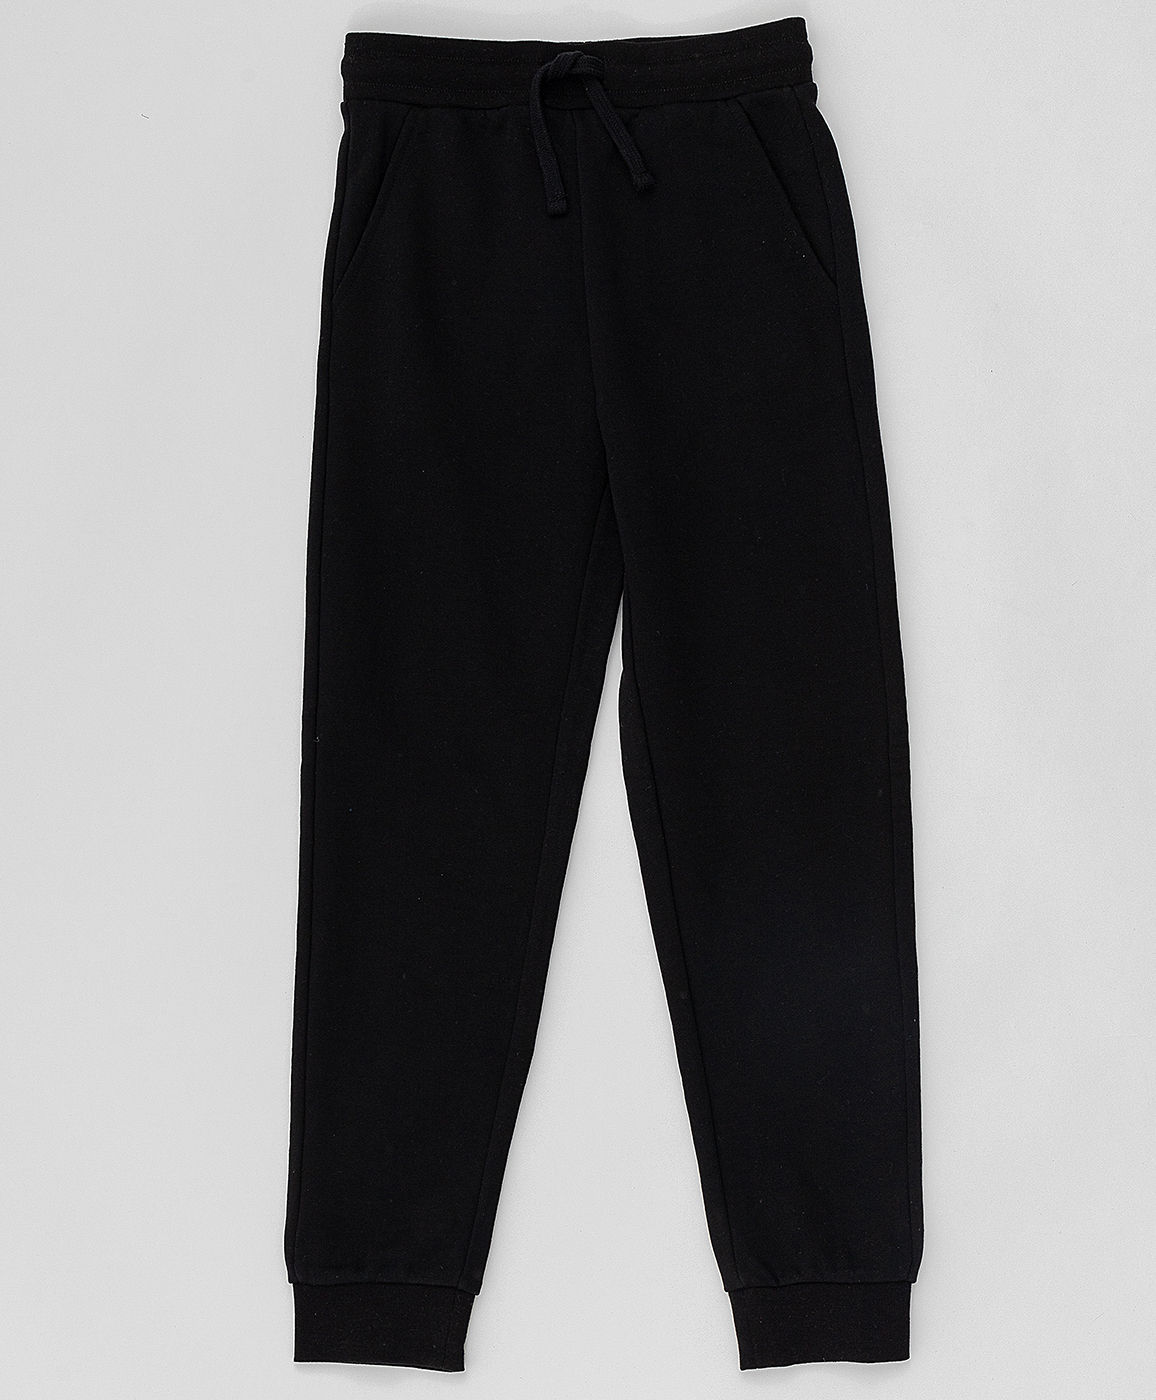 Черные брюки из футера Button Blue 220BBBJC56010800, размер 152, цвет черный на резинке - фото 3